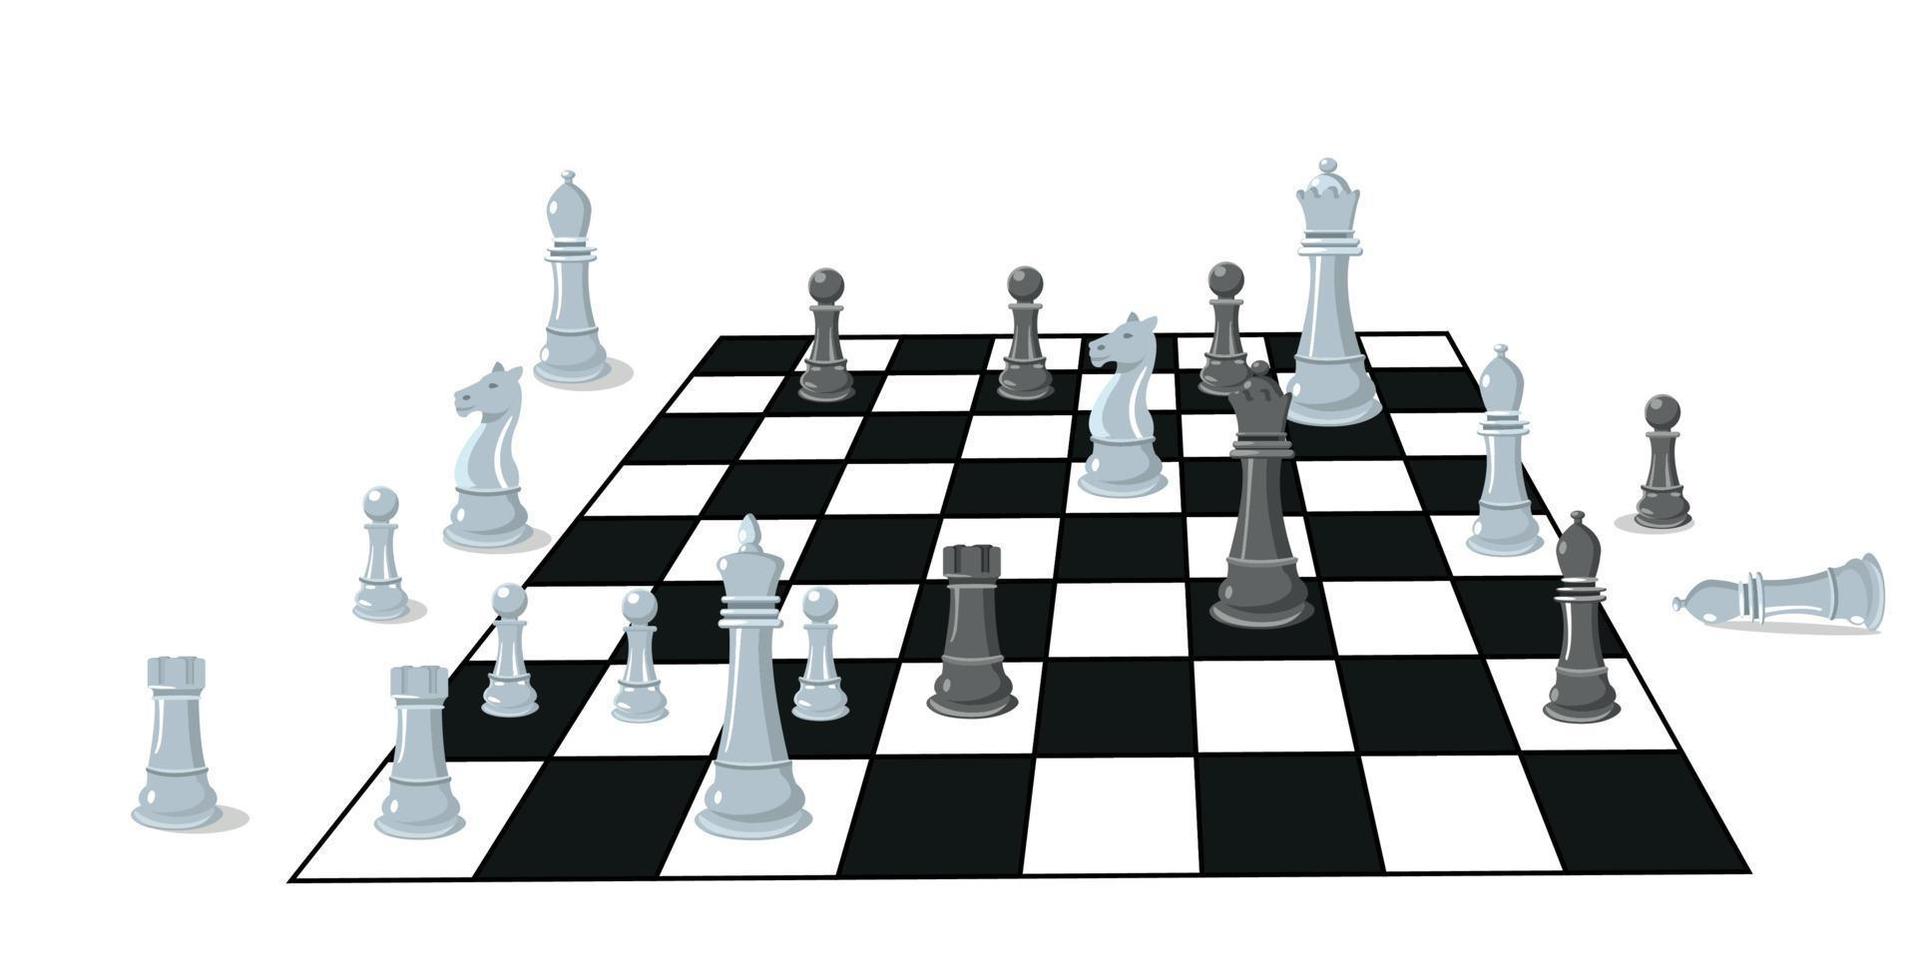 verzameling van schaak figuren. vector illustratie